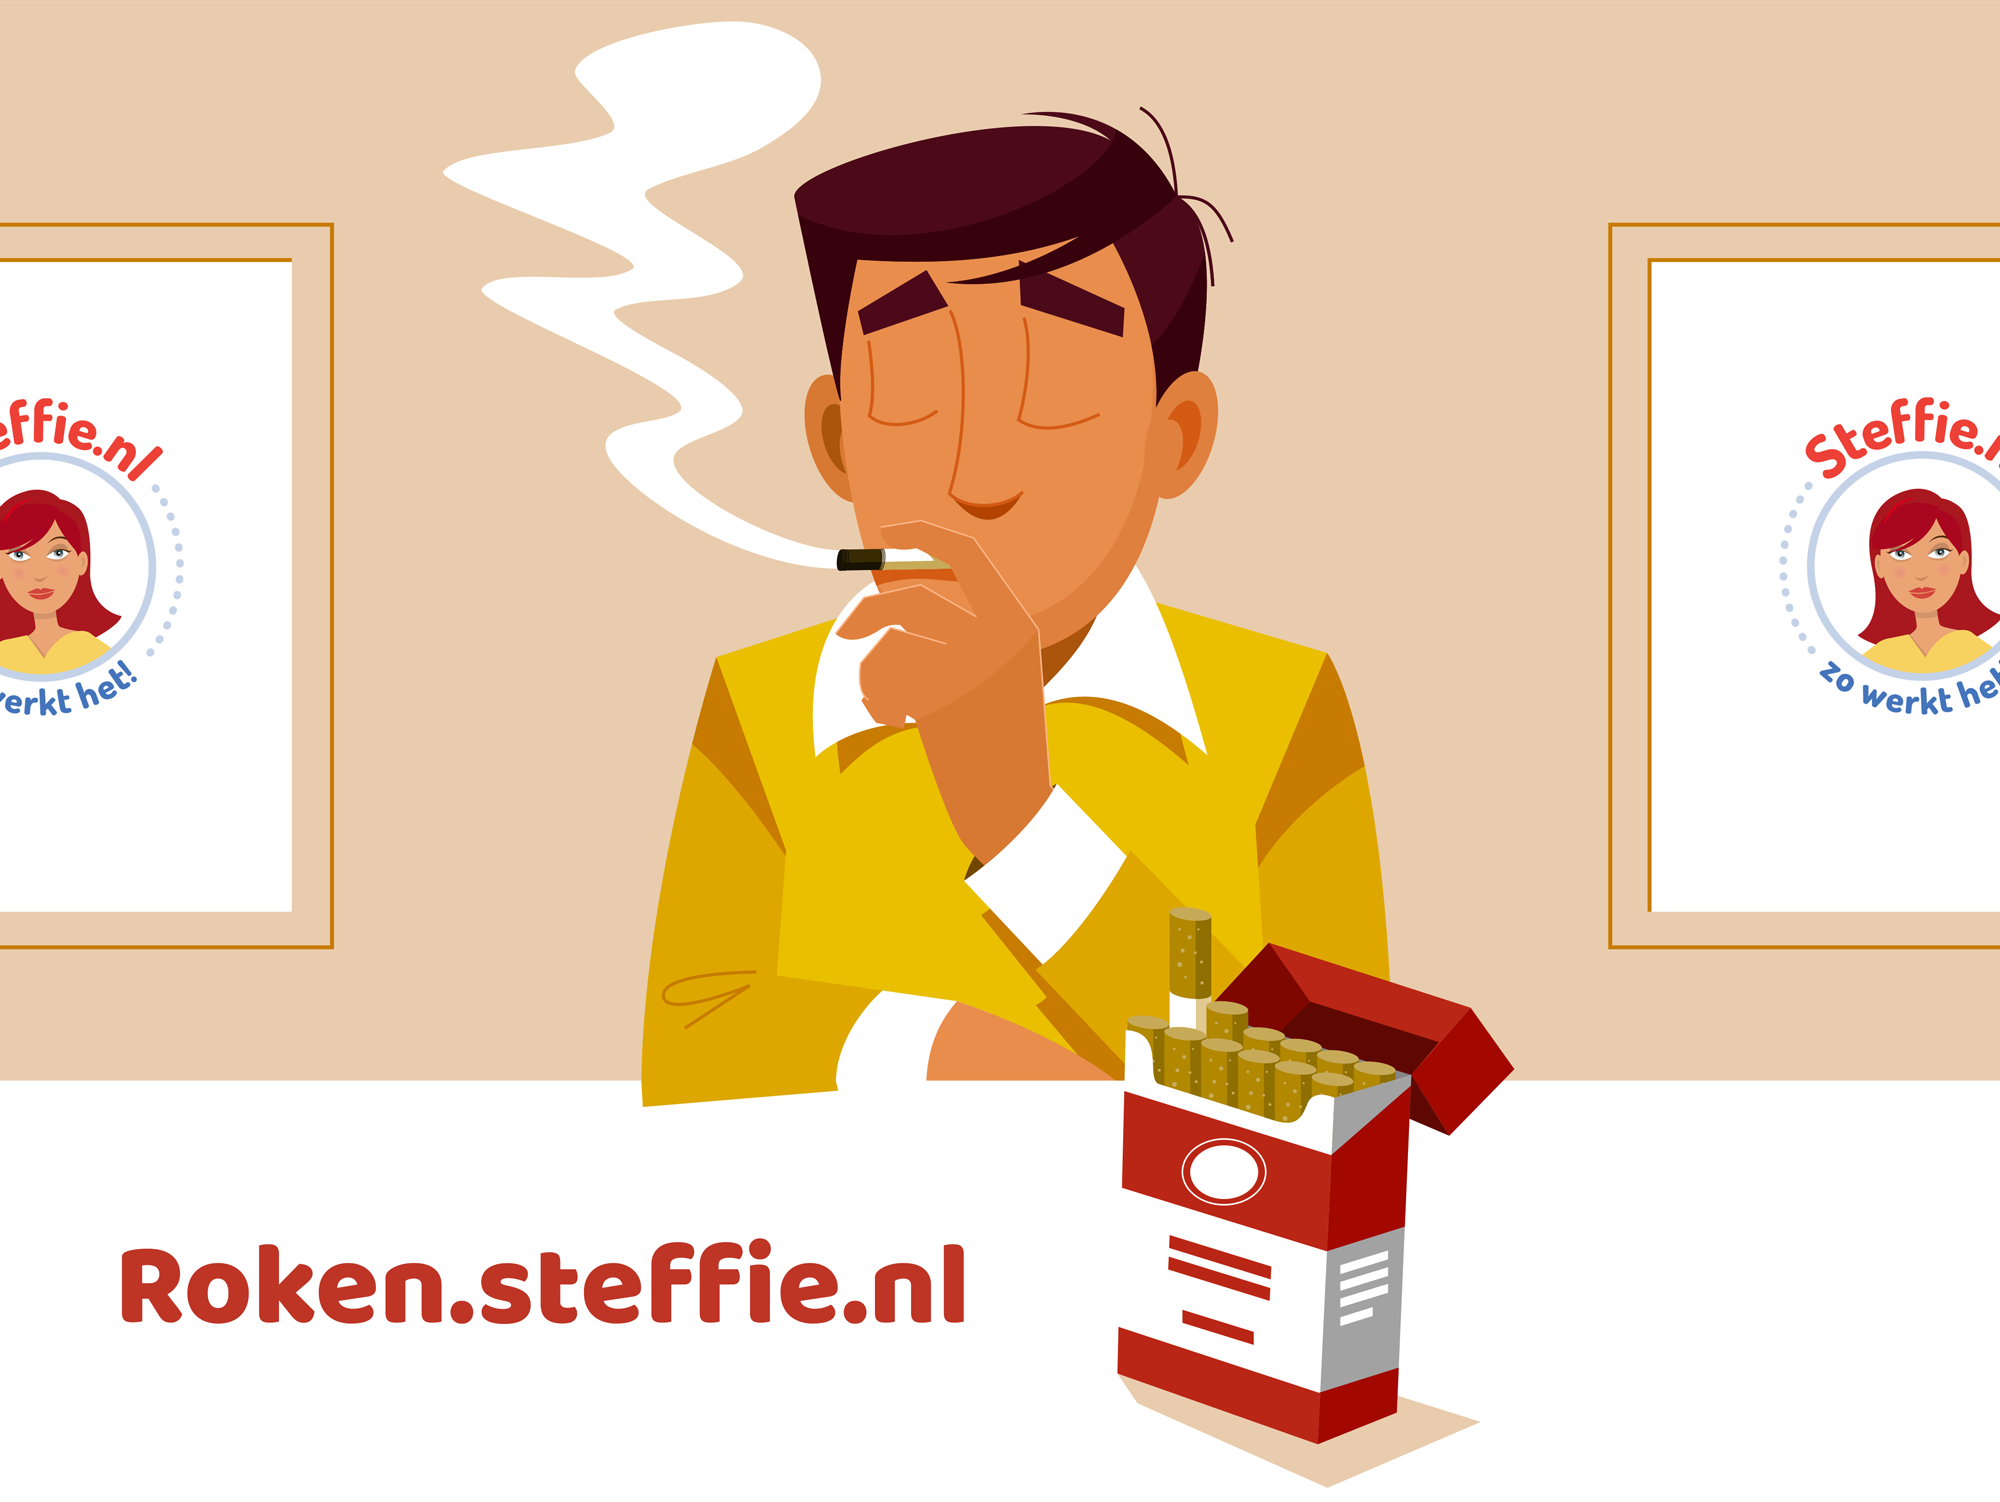 Steffie helpt op Roken.steffie.nl om stoppen met roken beter bespreekbaar te maken door mensen met een verstandelijke beperking.